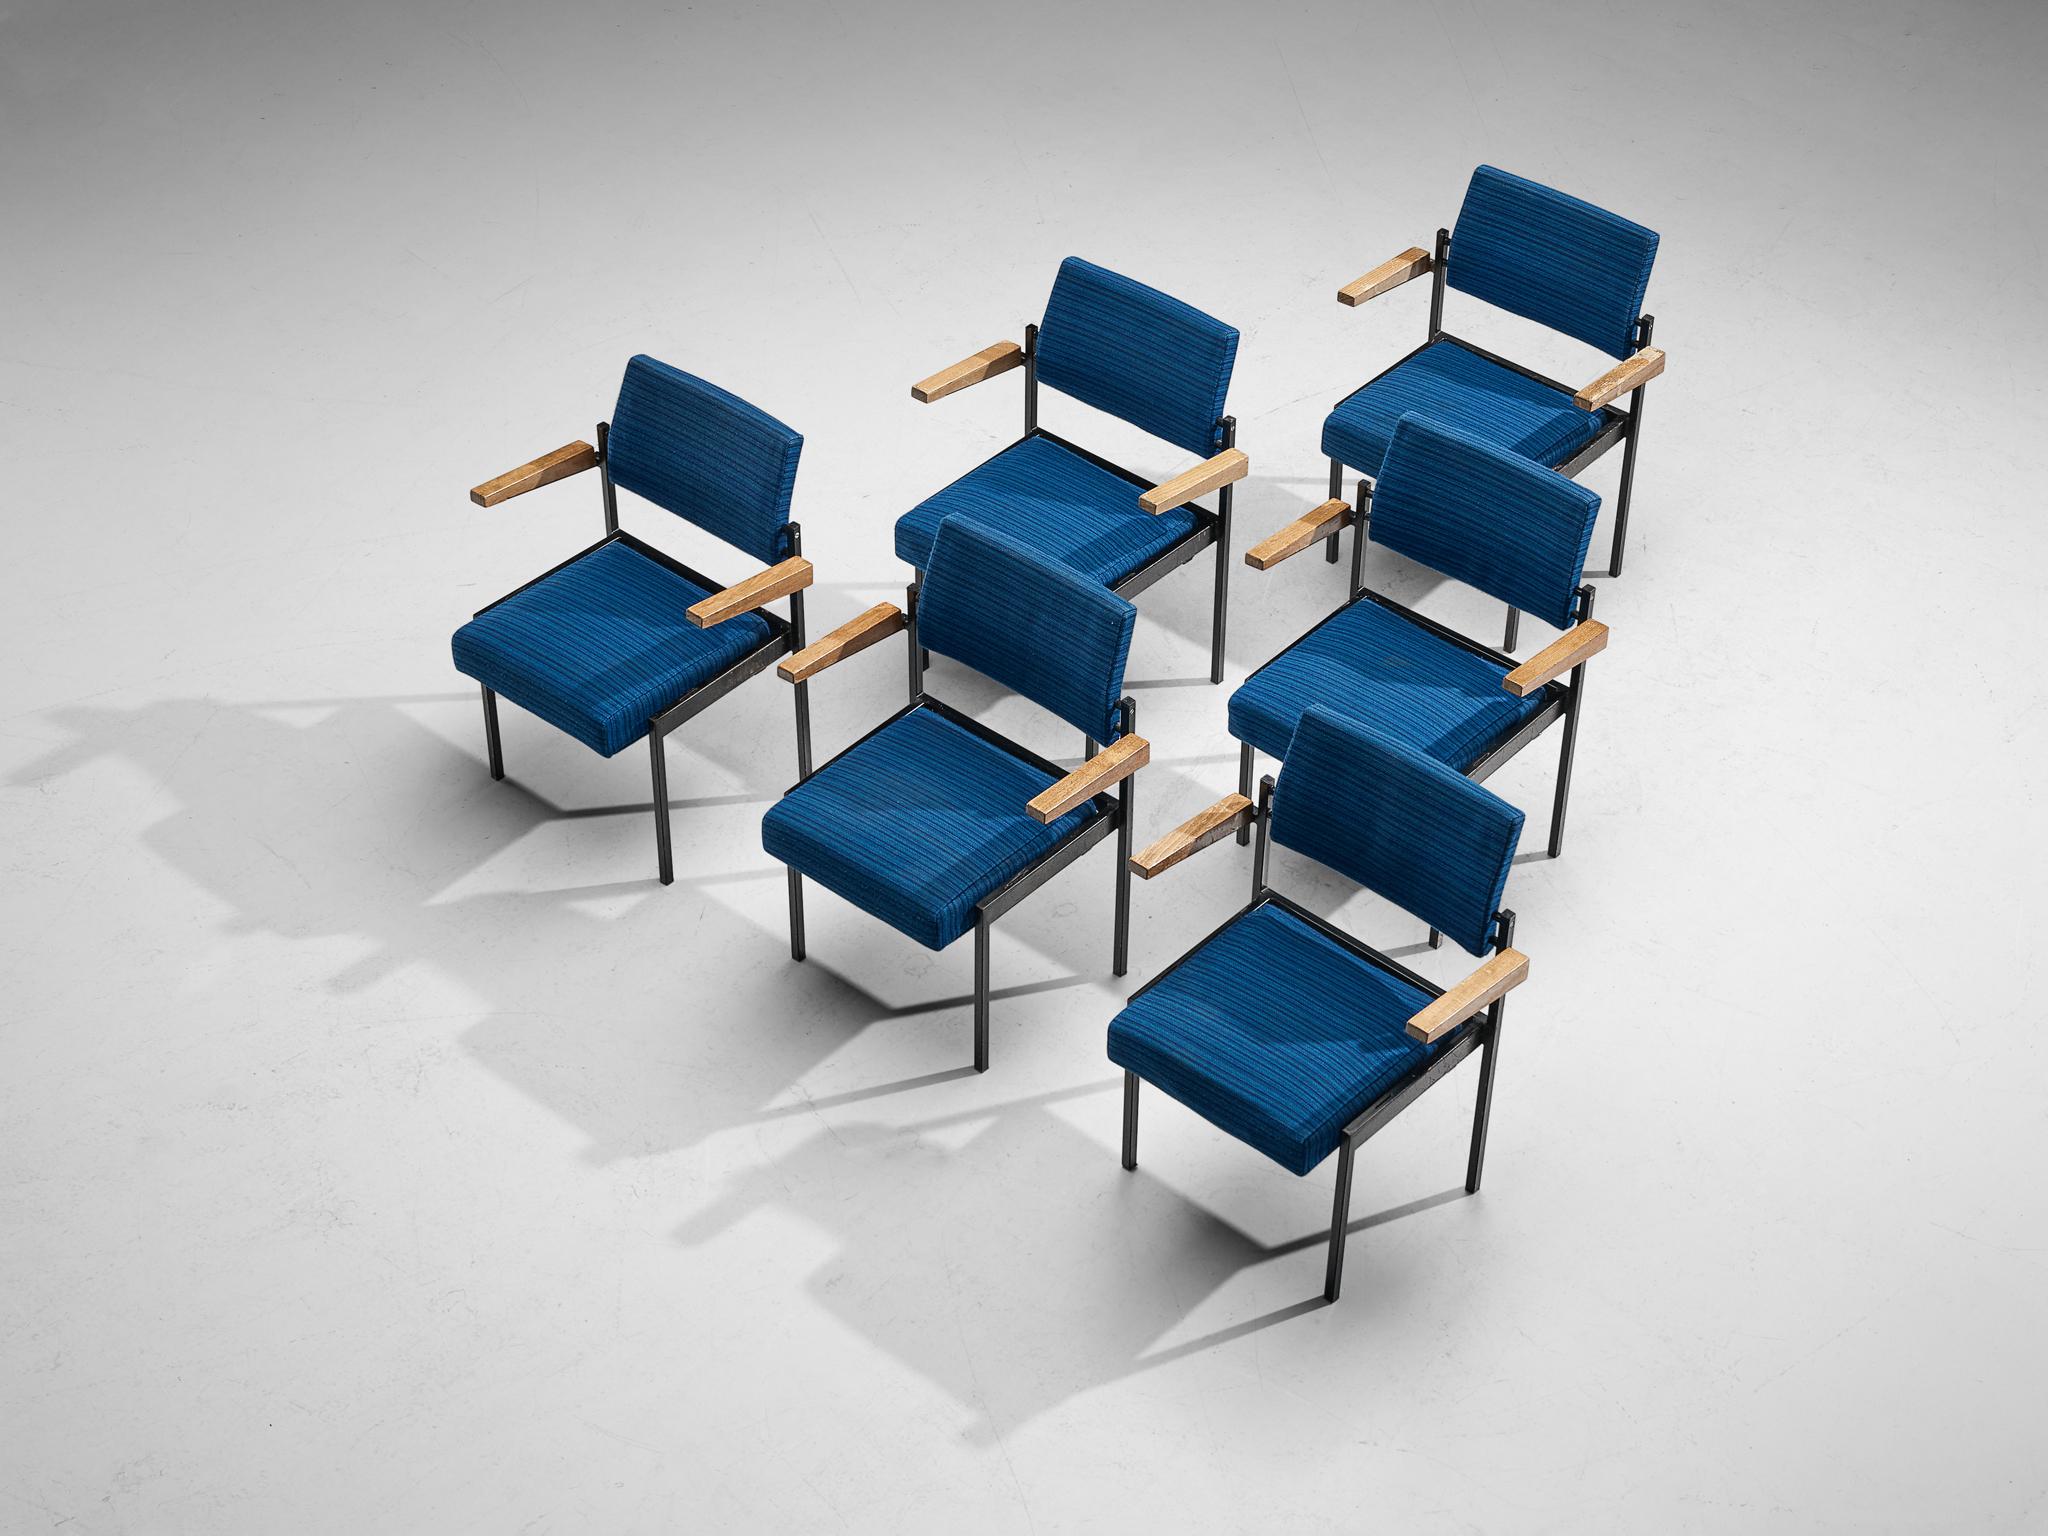 Satz von sechs Sesseln, lackiertes Metall, Stoff, Buche, Niederlande, 1960er Jahre.

Dieses Set niederländischer Stühle aus der Mitte des Jahrhunderts ist stapelbar und daher leicht zu verstauen. Ein weiteres funktionelles Merkmal ist die